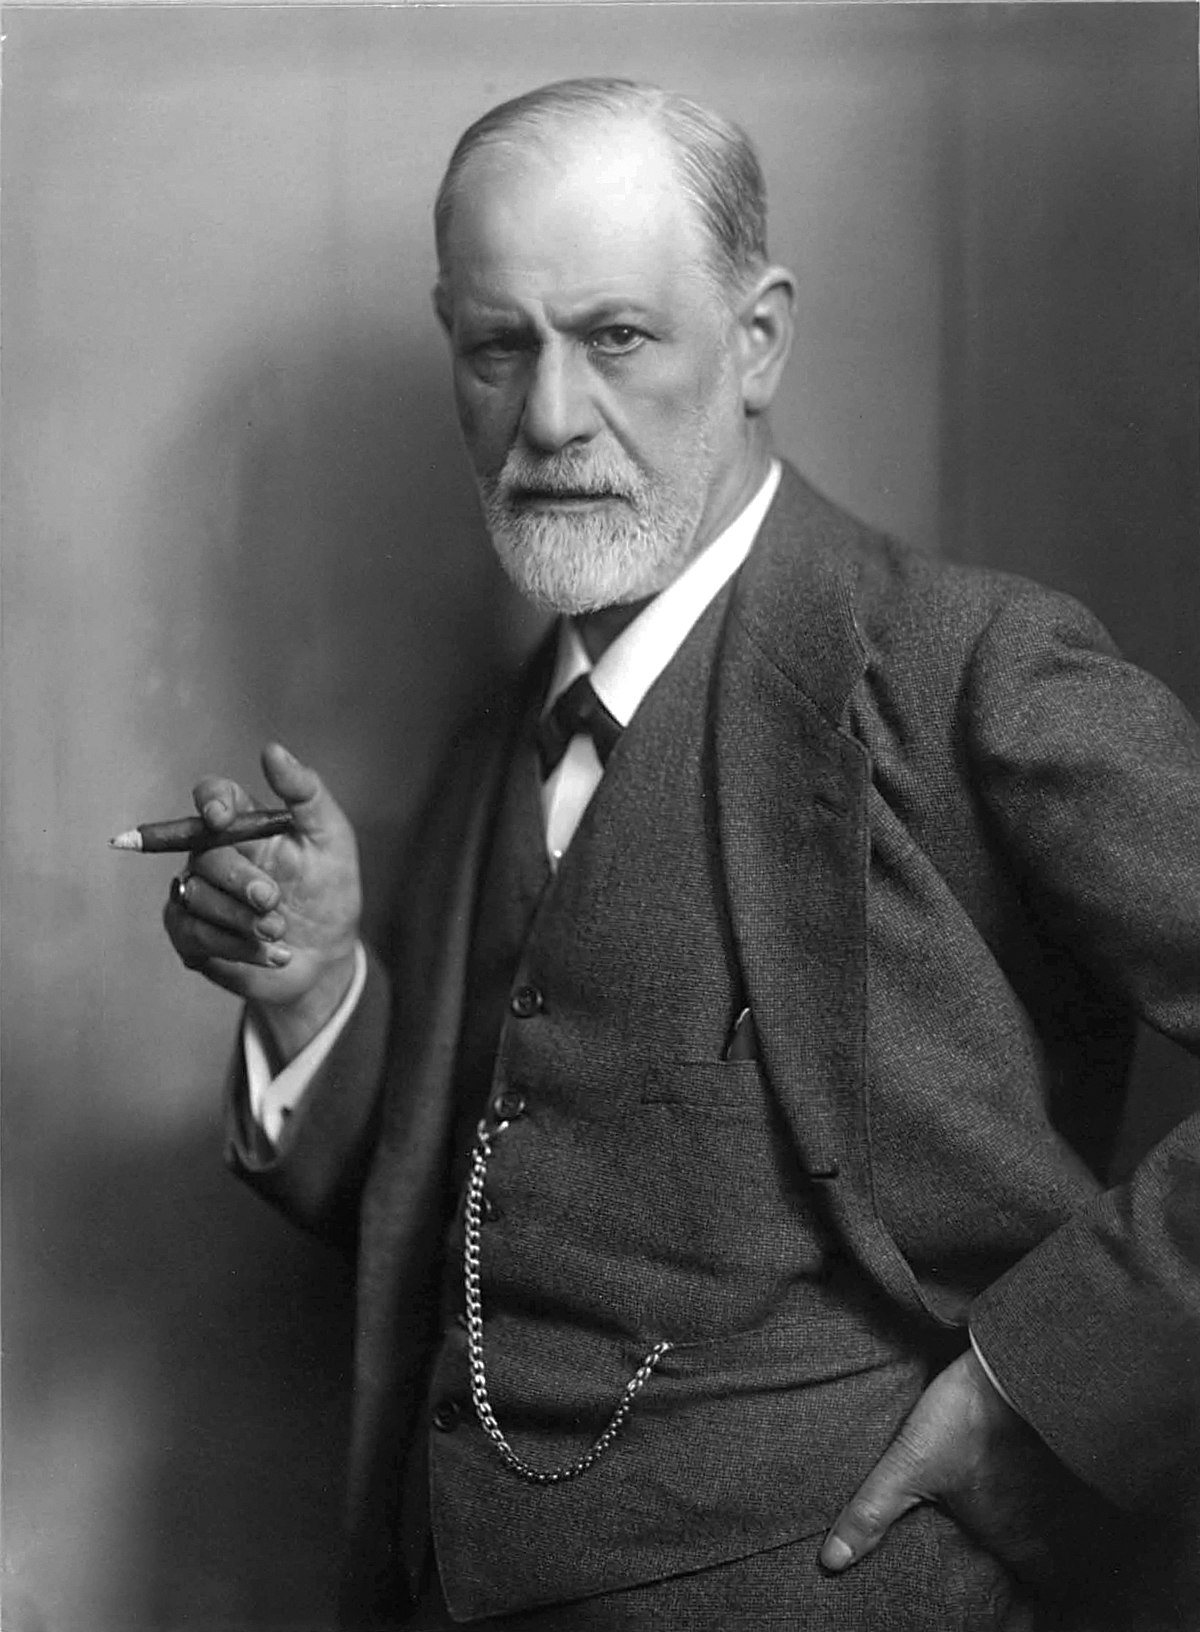 Sigmund_Freud,_by_Max_Halberstadt_(cropped).jpg